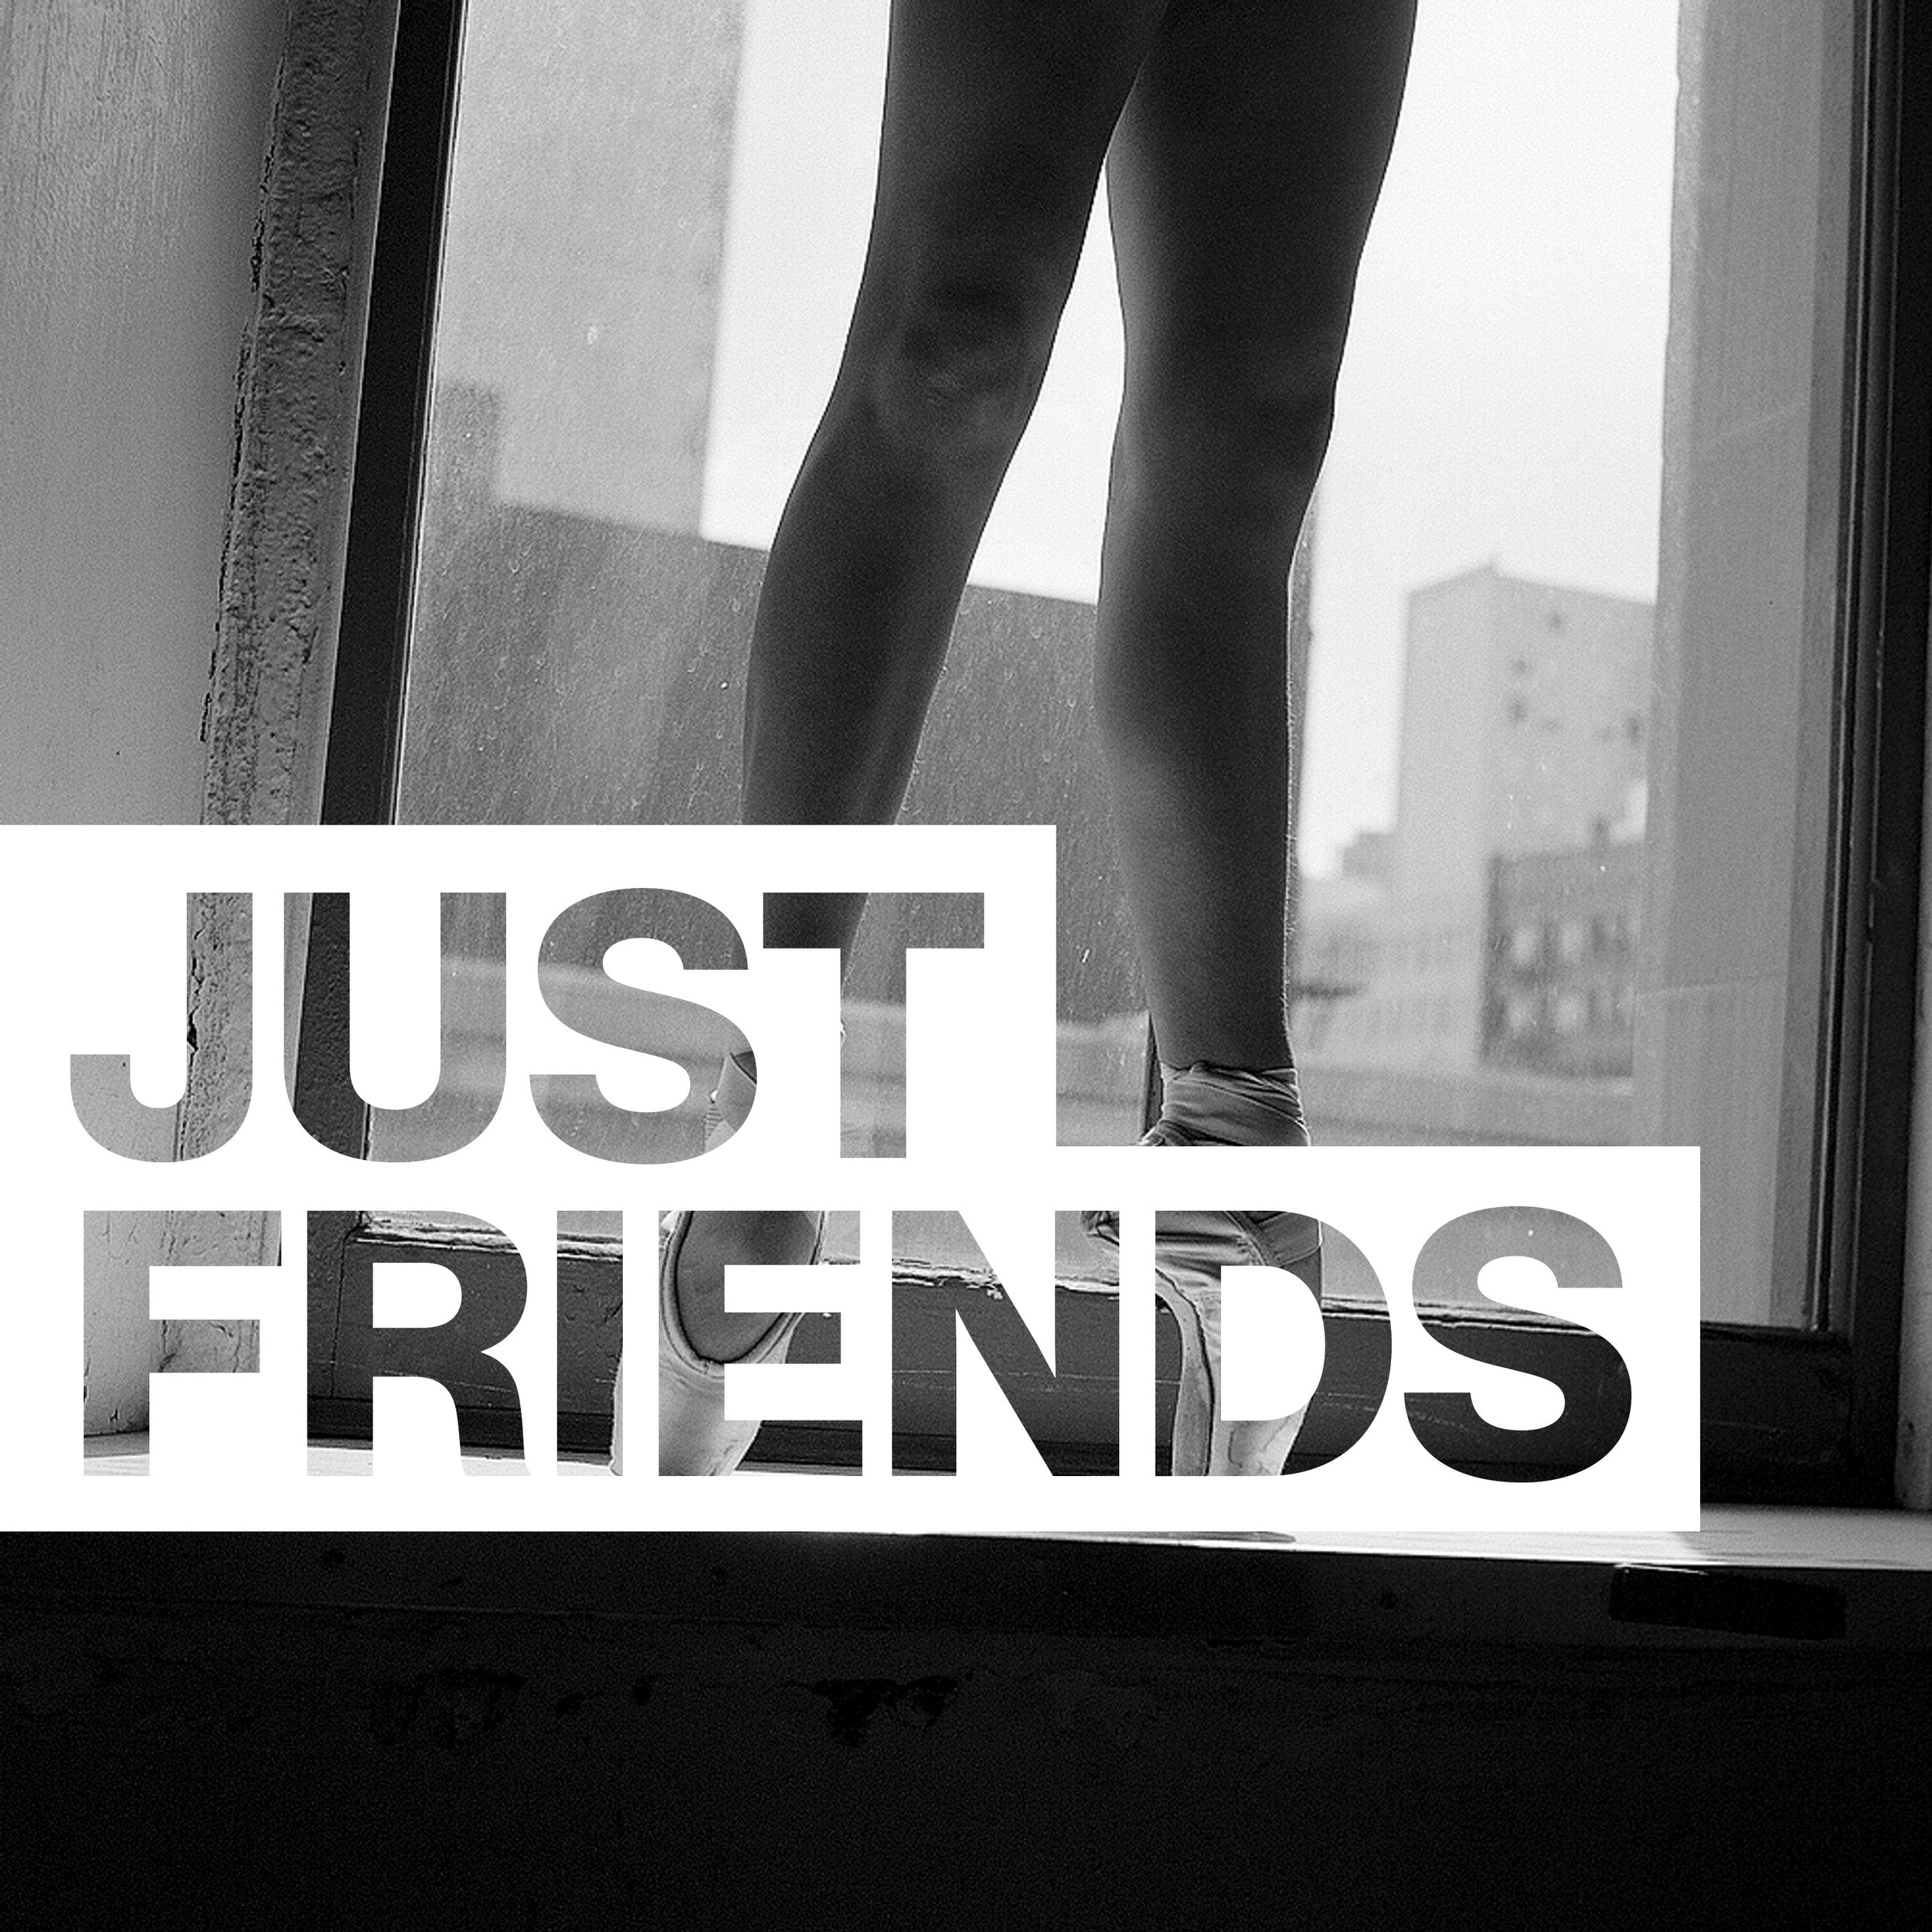 Just friends. Just friends... Картинки. Просто друзья надпись. Мы просто друзья надпись.